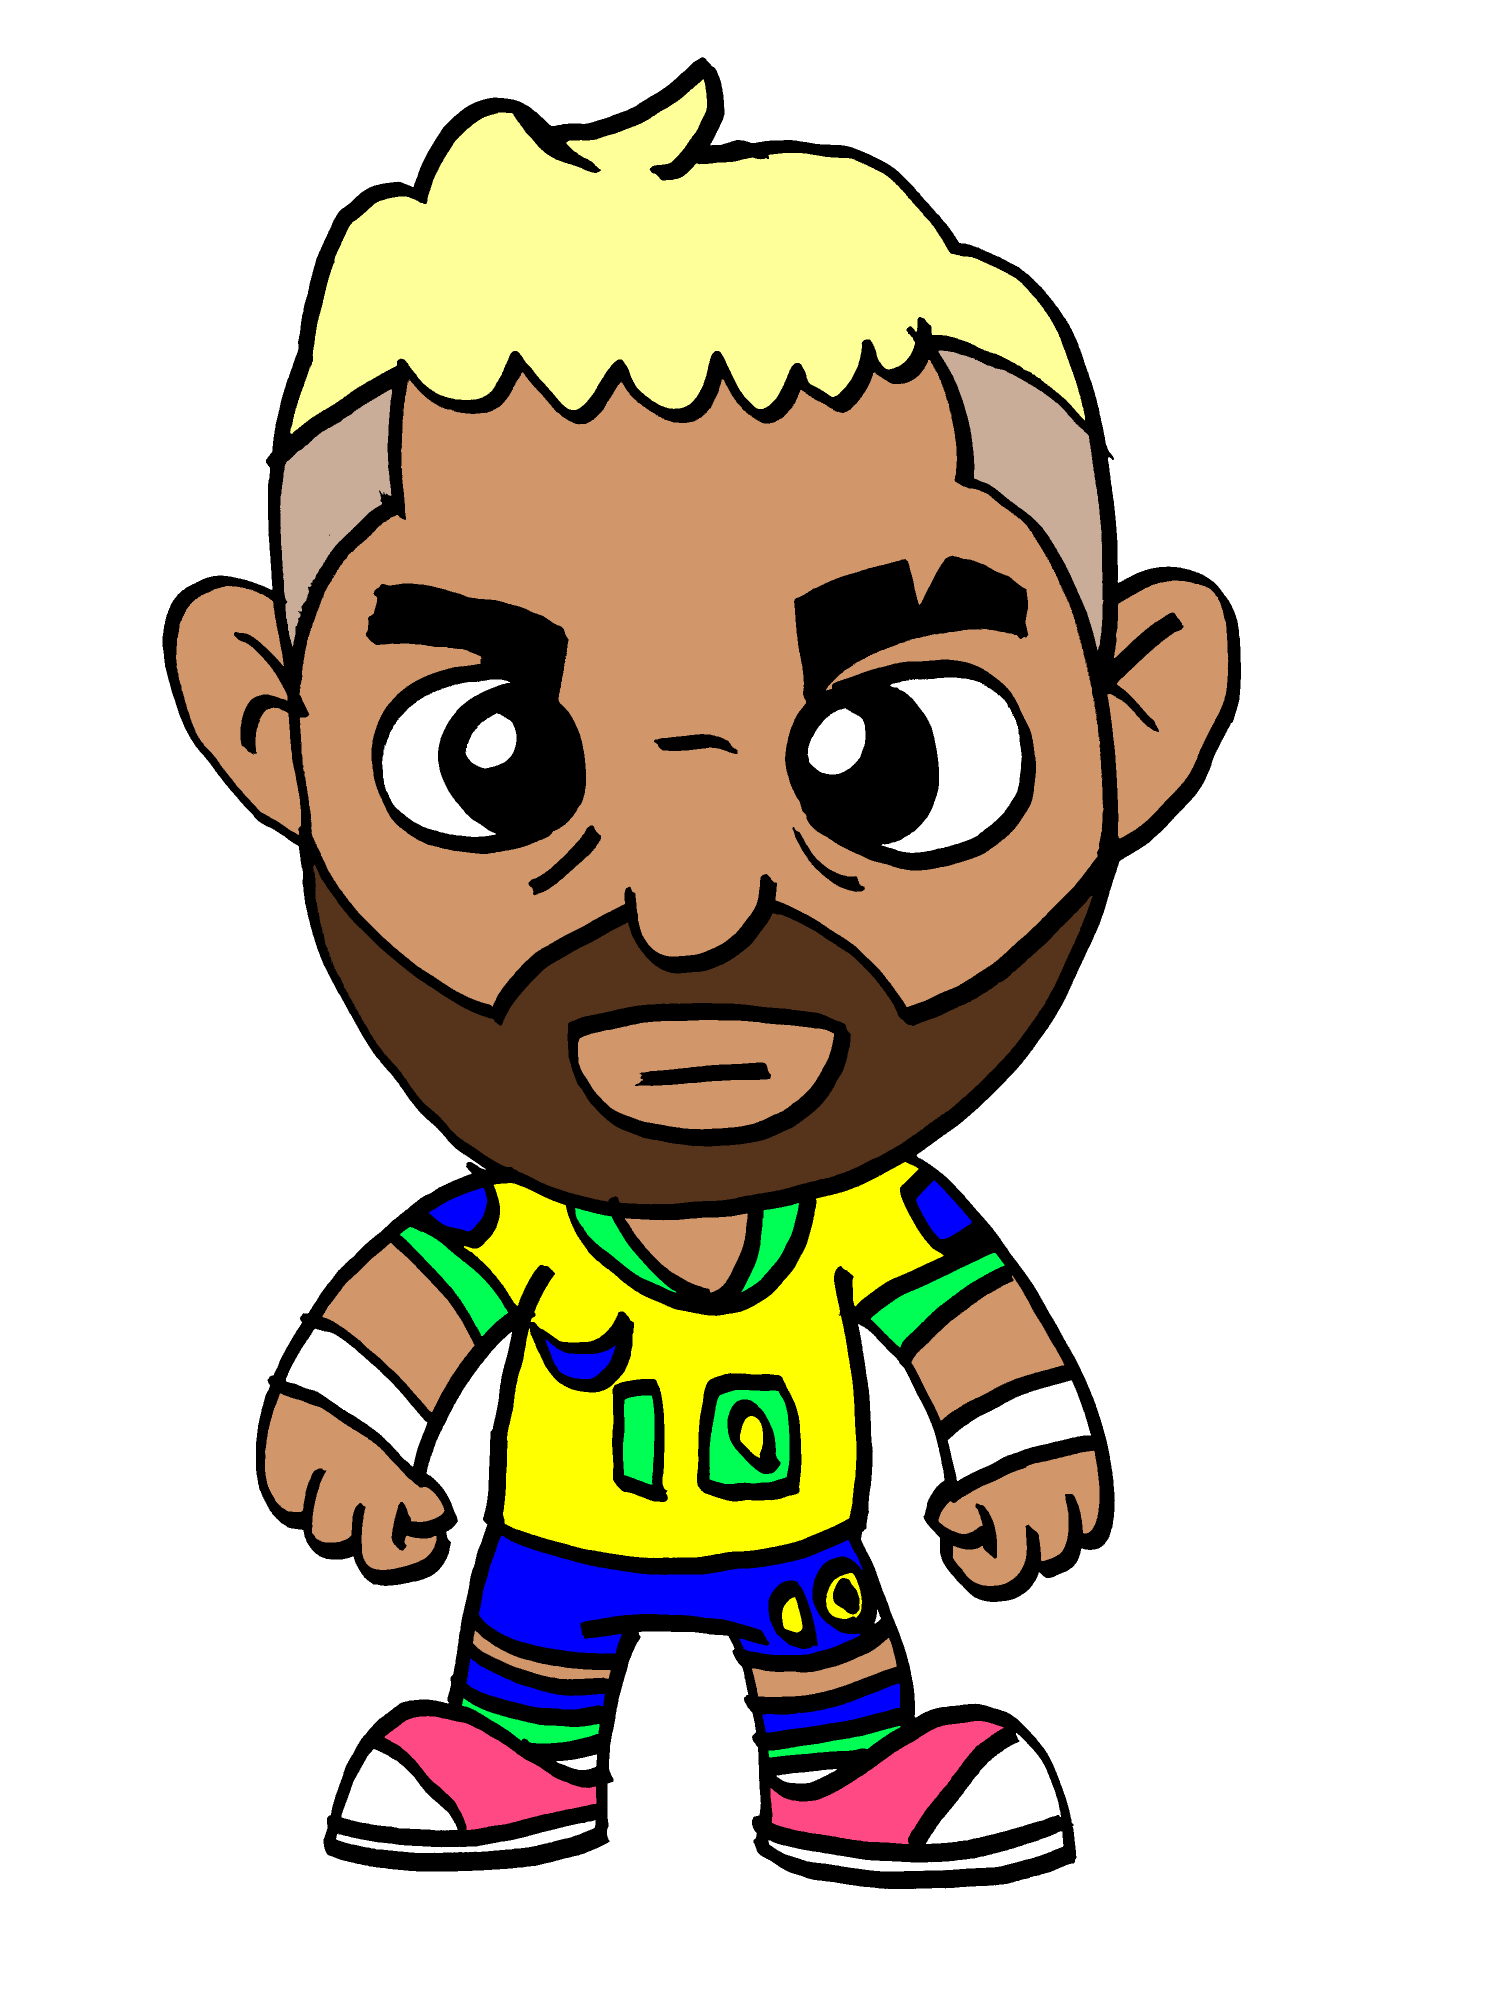 My drawing of Neymar Jr. Fandom